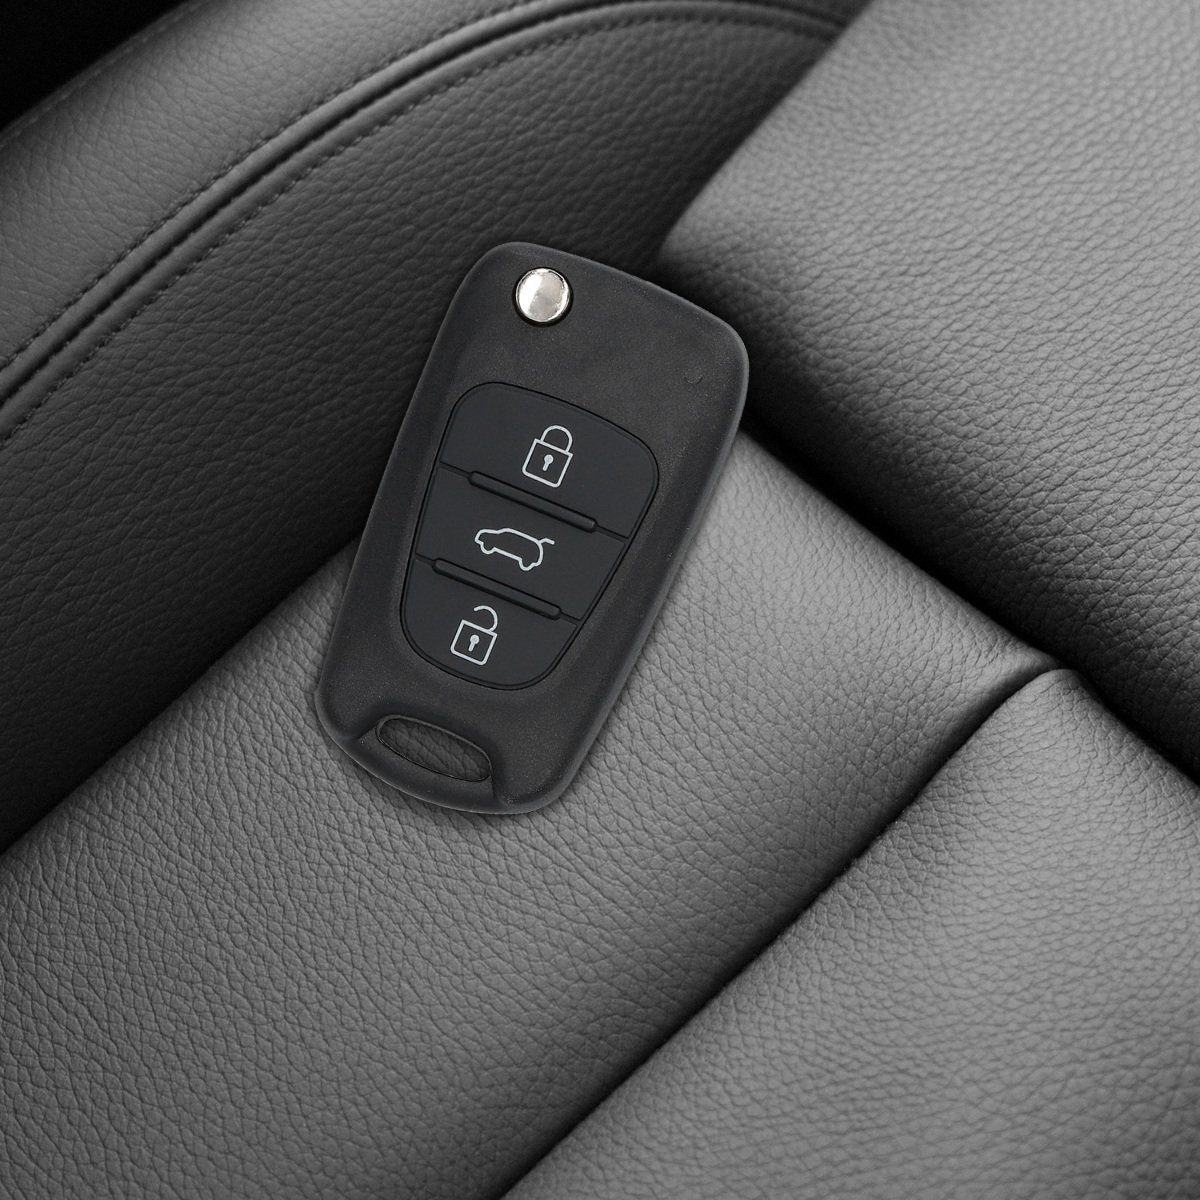 Transponder Elektronik Gehäuse Hyundai Autoschlüssel, Schlüsseltasche Auto - Schlüsselgehäuse Batterien kwmobile ohne für